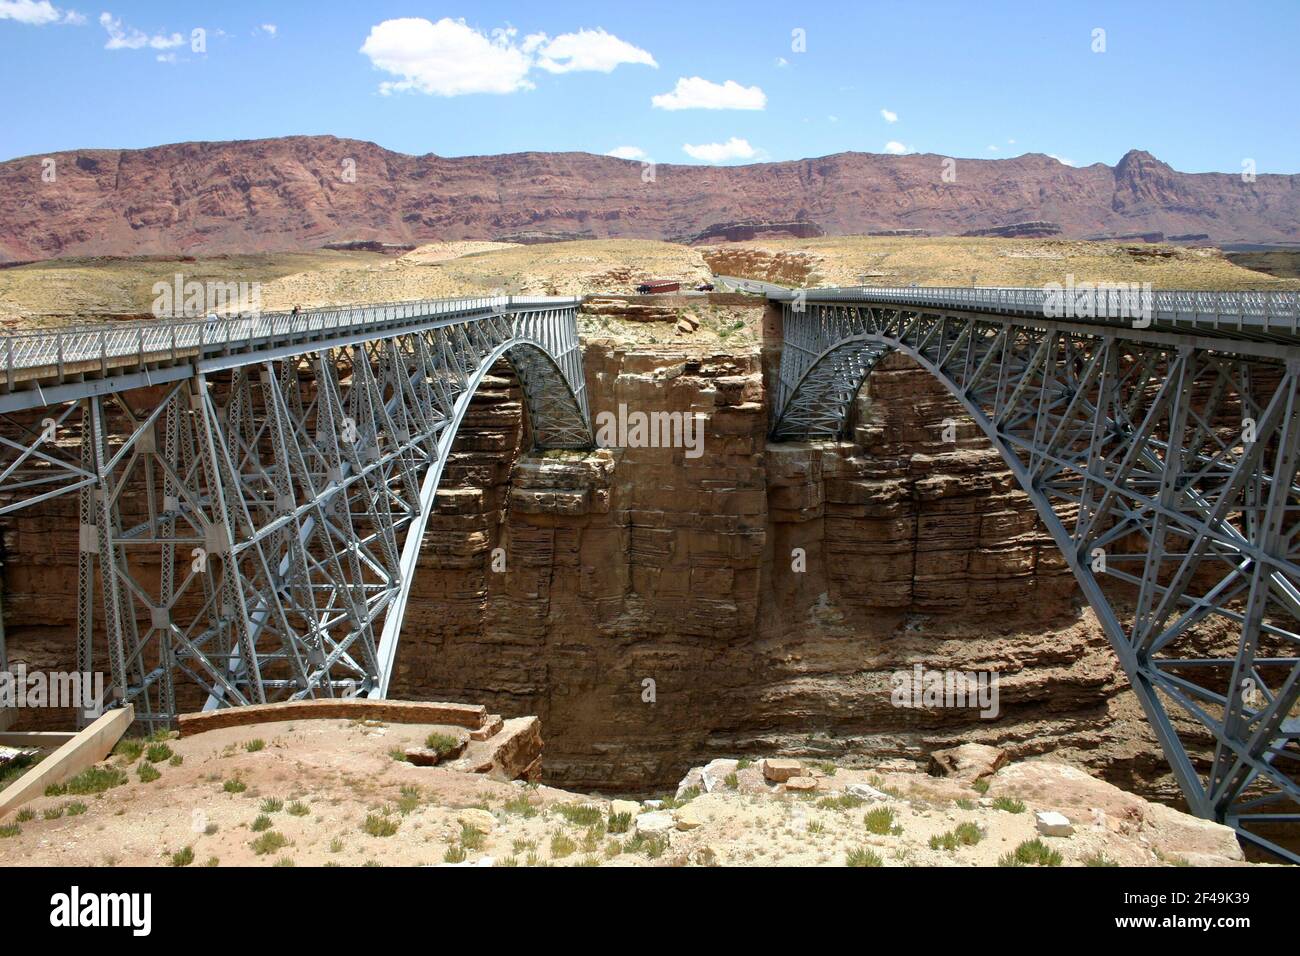 Los puentes Navajo en la Nación Navajo, maravillas de ingeniería, Monumentos nacionales, peatón a la izquierda, tráfico a la derecha, Arizona, EE.UU. Foto de stock